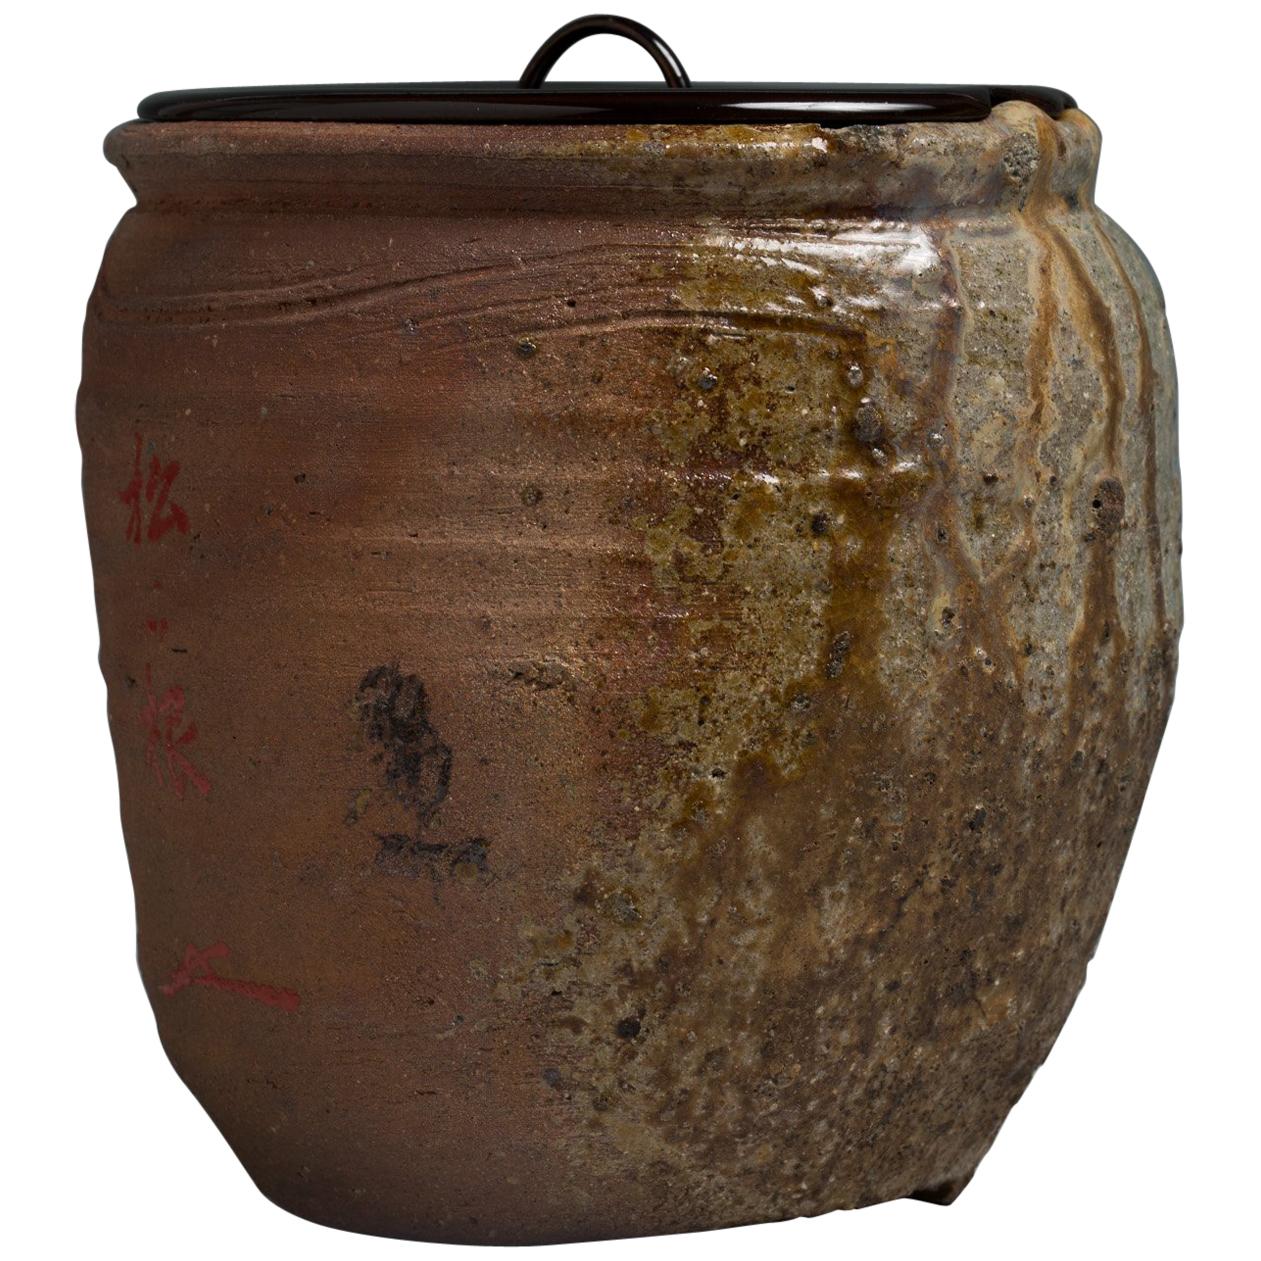 Japanese Ko-Bizen Water Jar ‘Mizusashi’ Named “Matsugane”, 16th Century